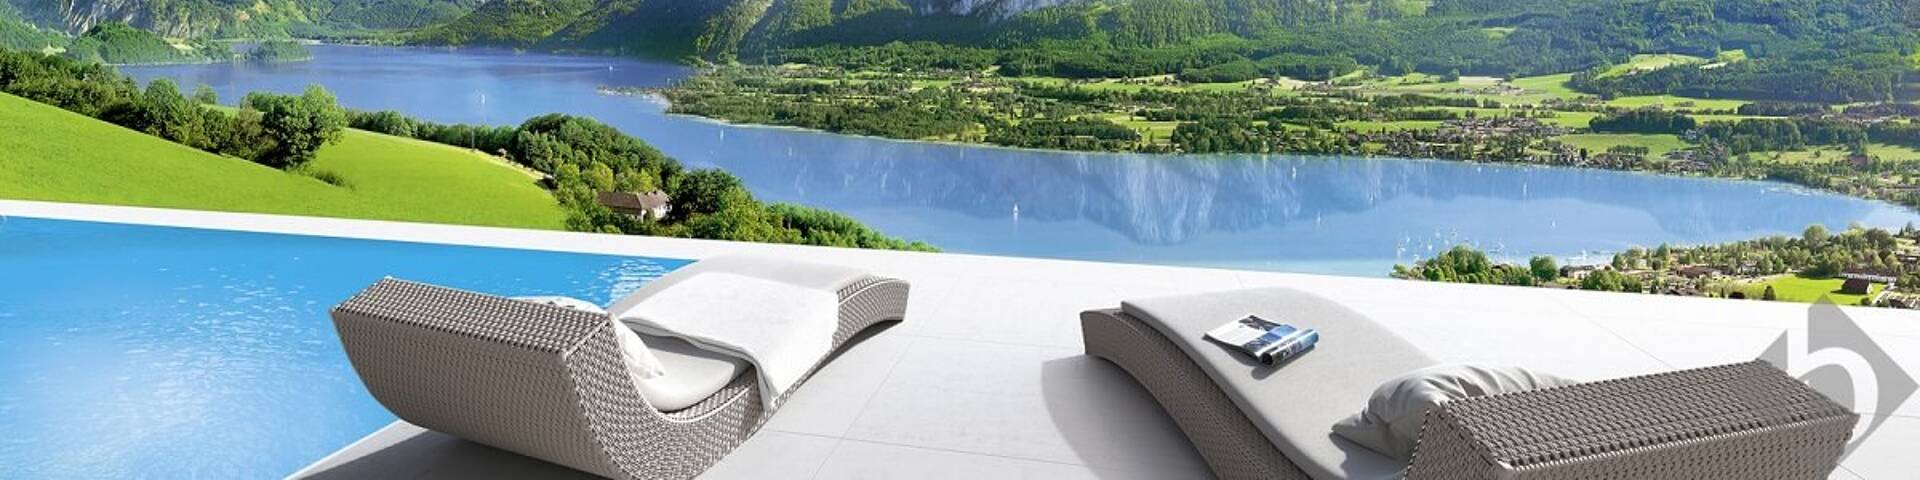 Sky Lounge Mondsee - Luxury Real Estate